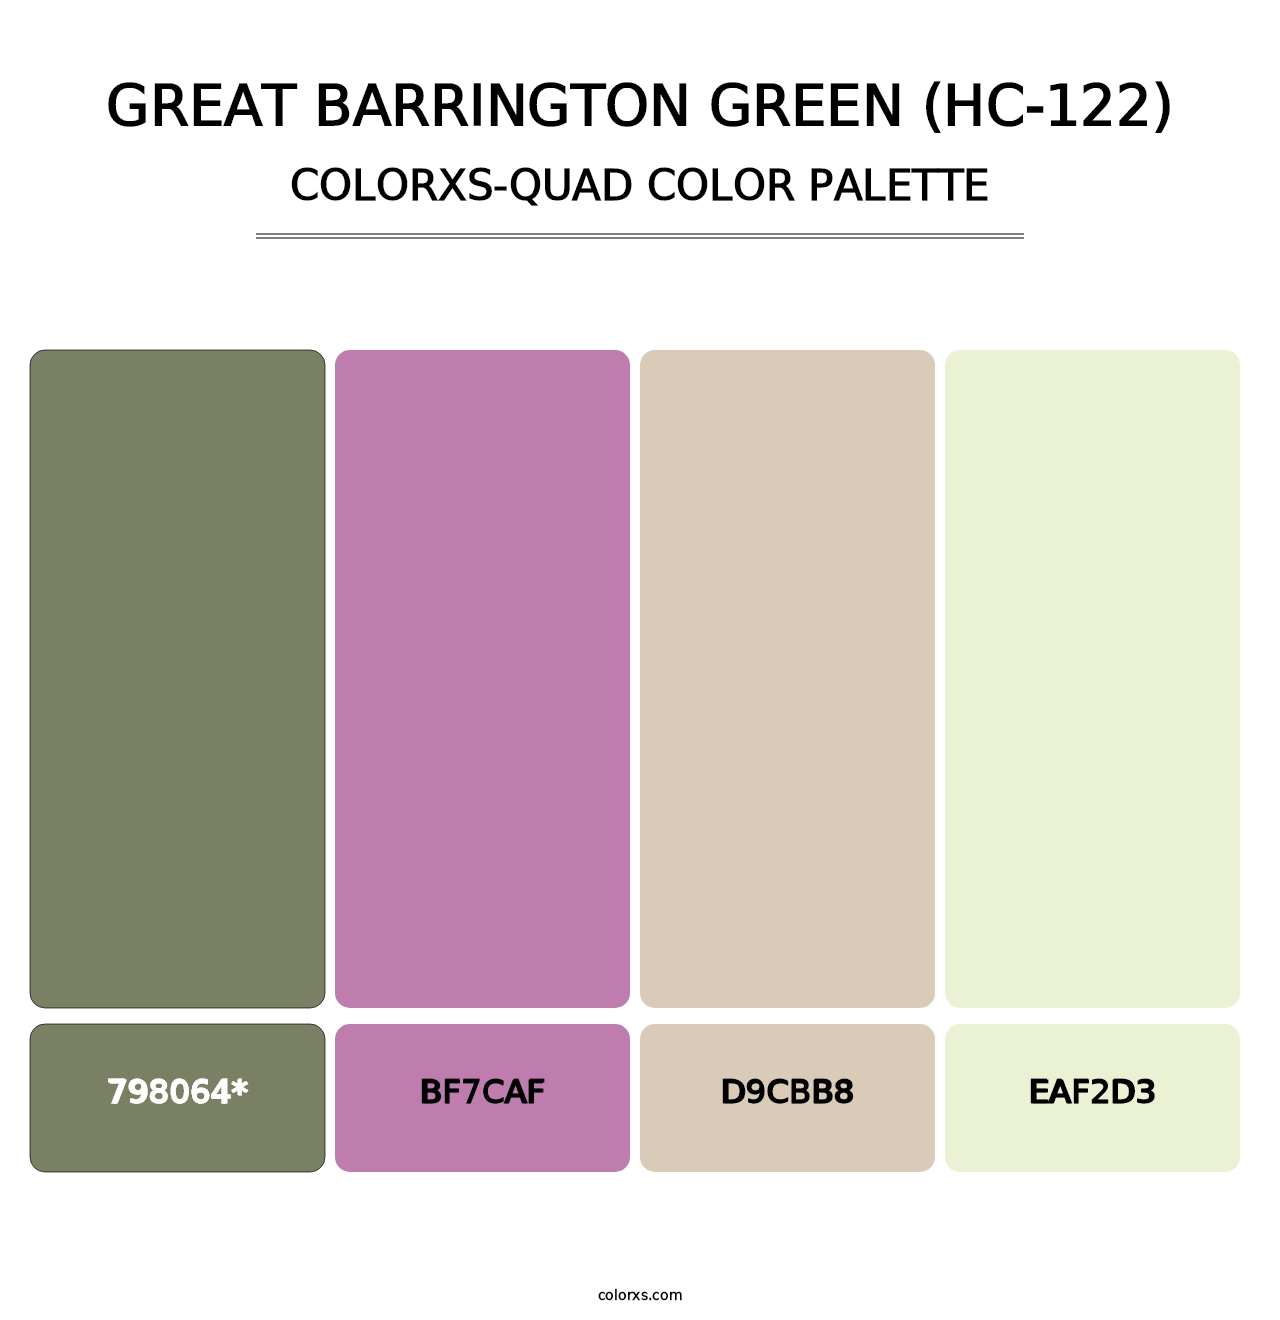 Great Barrington Green (HC-122) - Colorxs Quad Palette